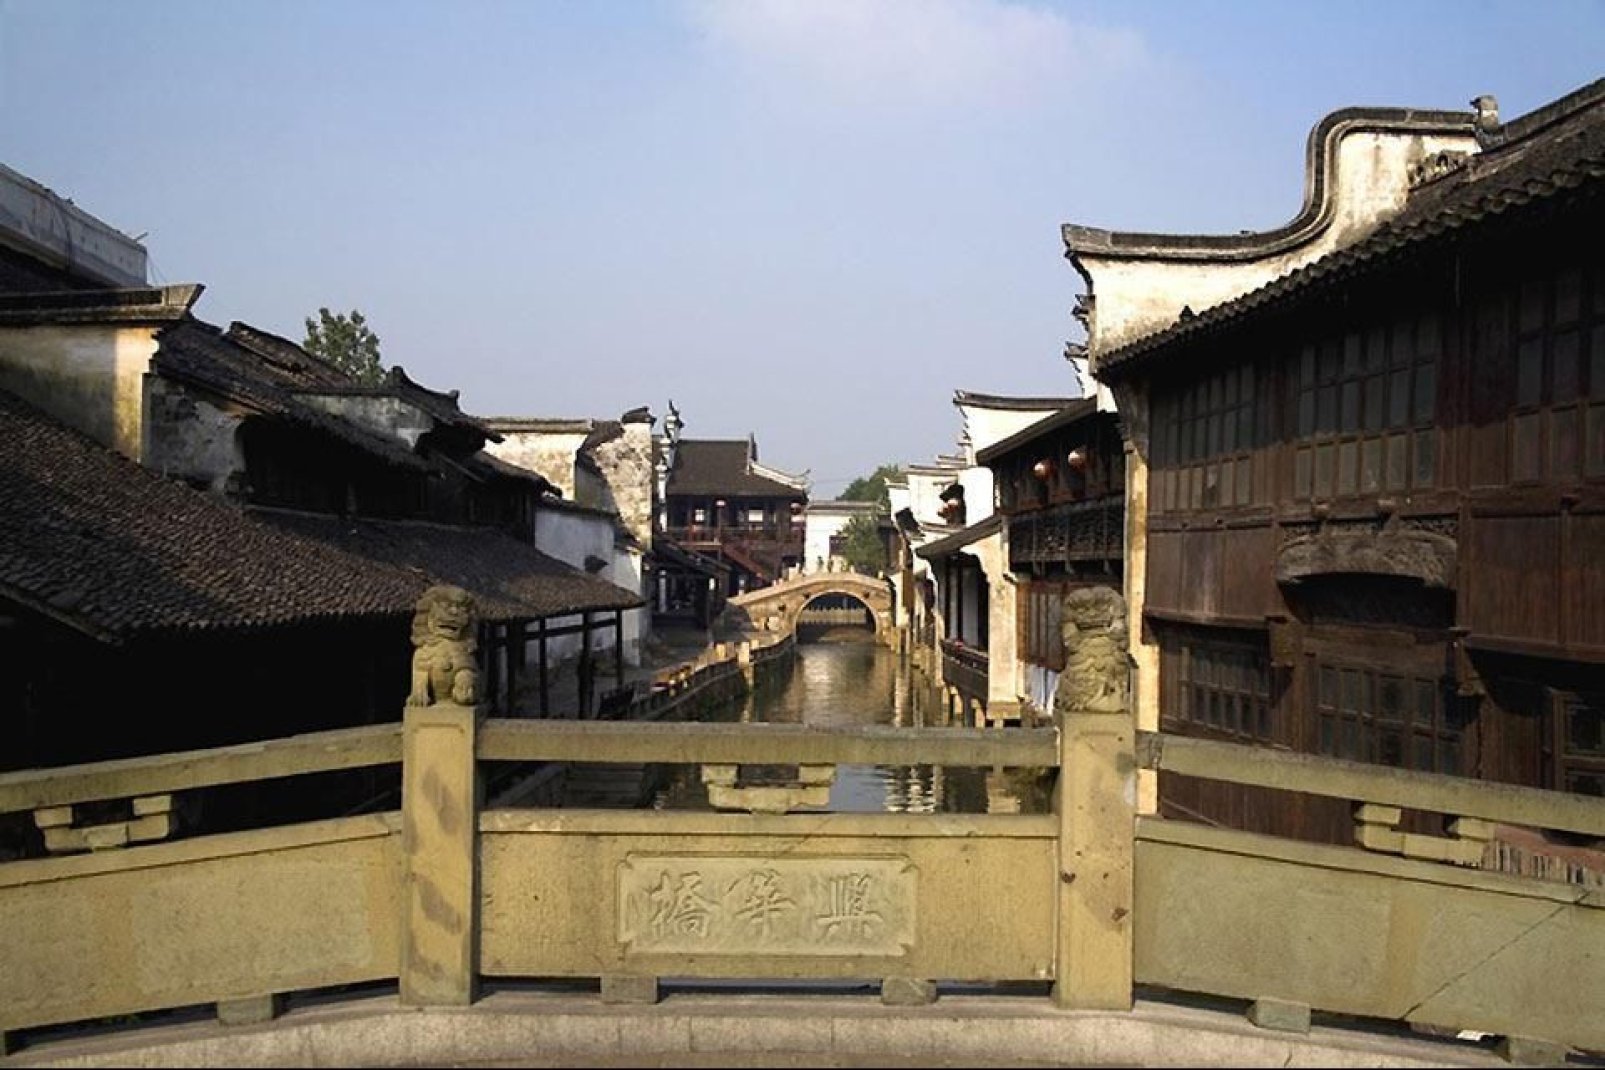 La città di Suzhou, antica capitale del regno Wu, è rinomata per i suoi giardini e le sue costruzioni sull'acqua.